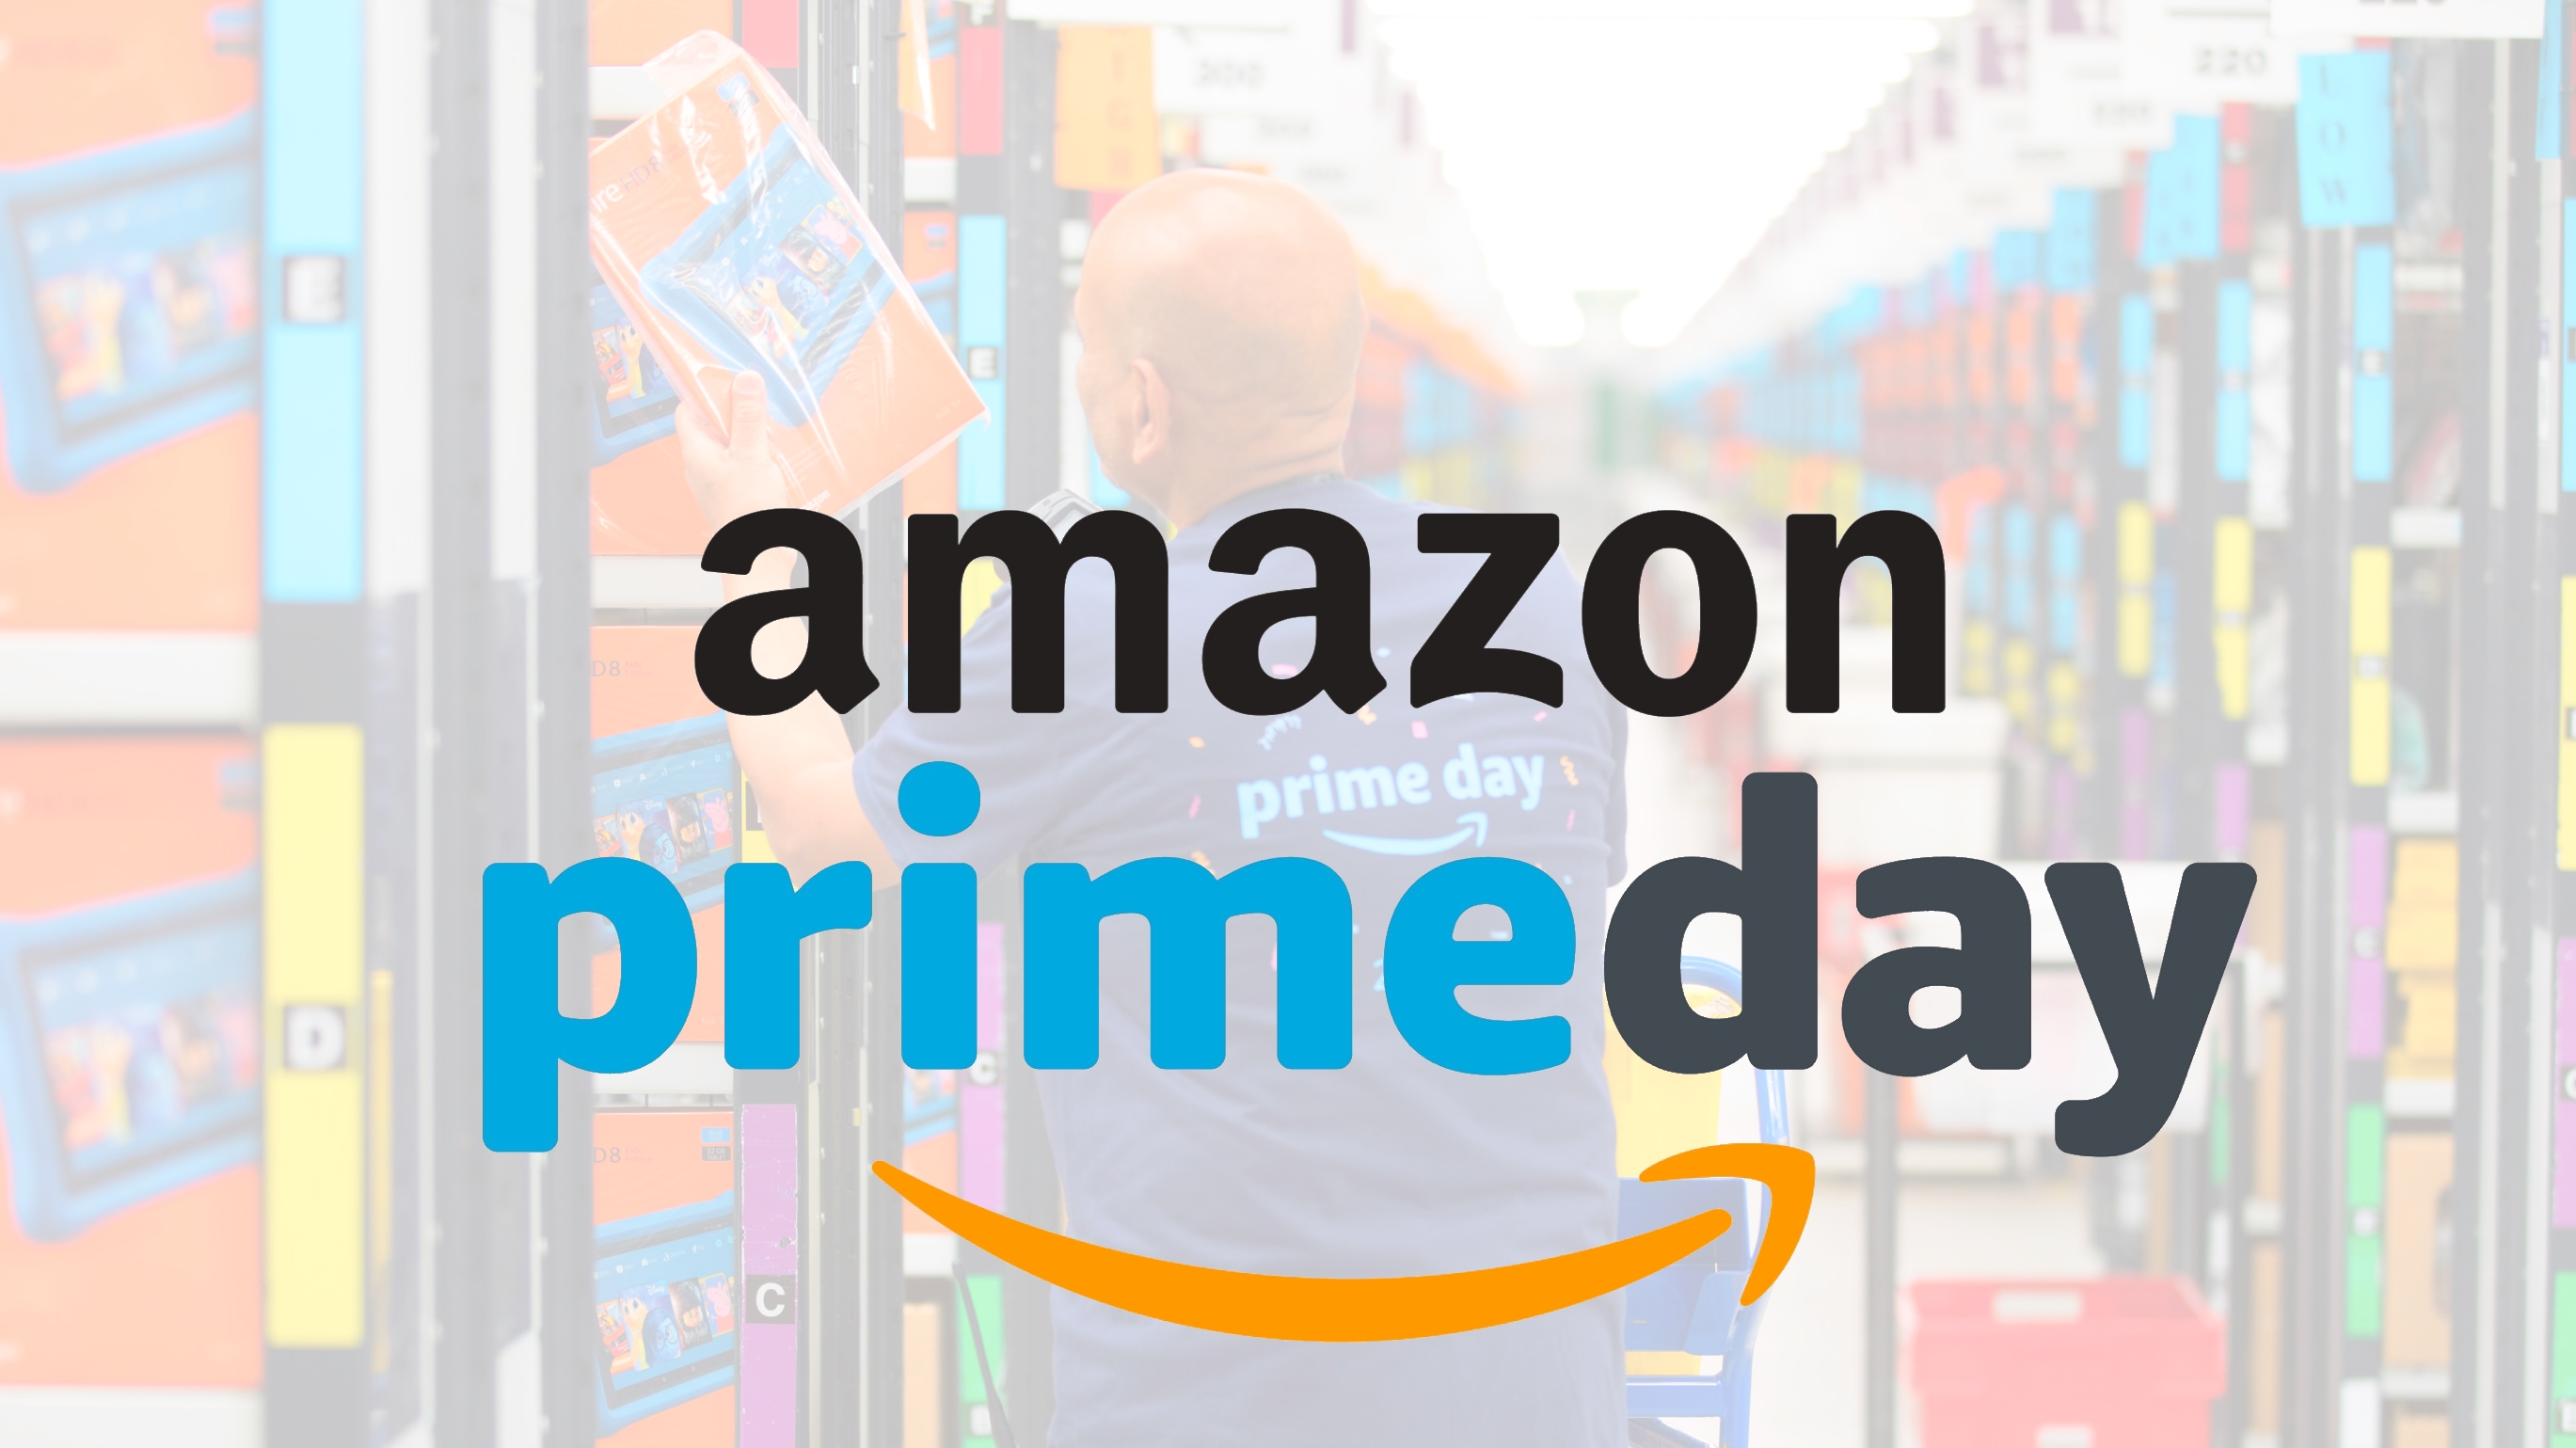 Amazon Prime Day 21 Decouvrez Les Meilleures Offres Du Jour Techradar